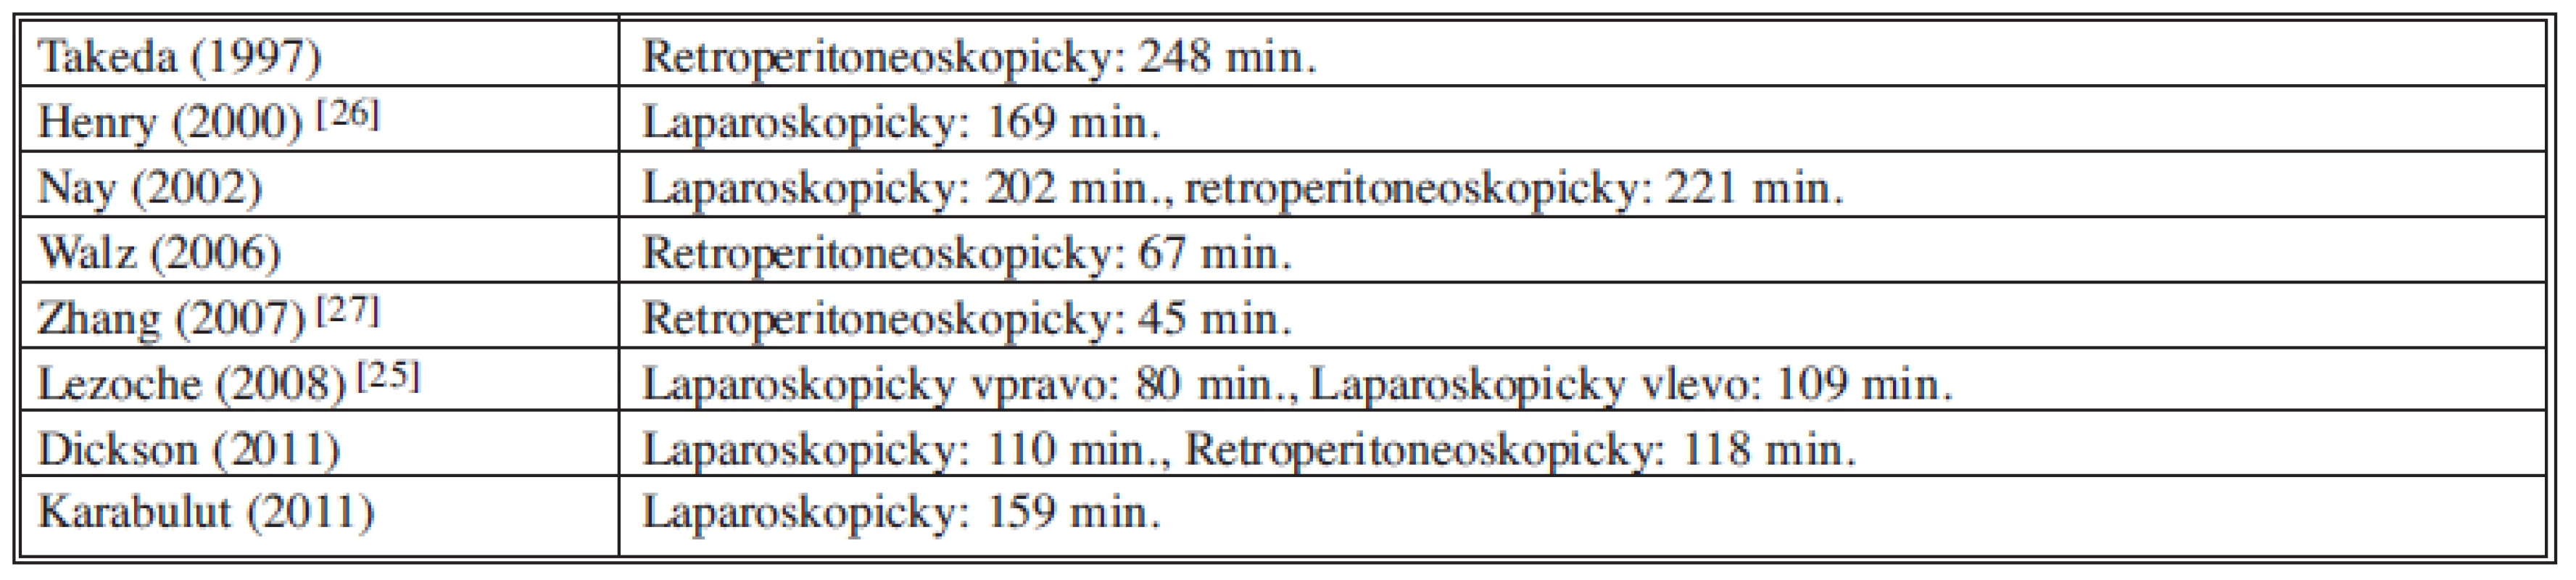 Operační časy ve vybraných studiích (chronologicky)
Tab. 4: Operative times in selected studies (in a chronological order)